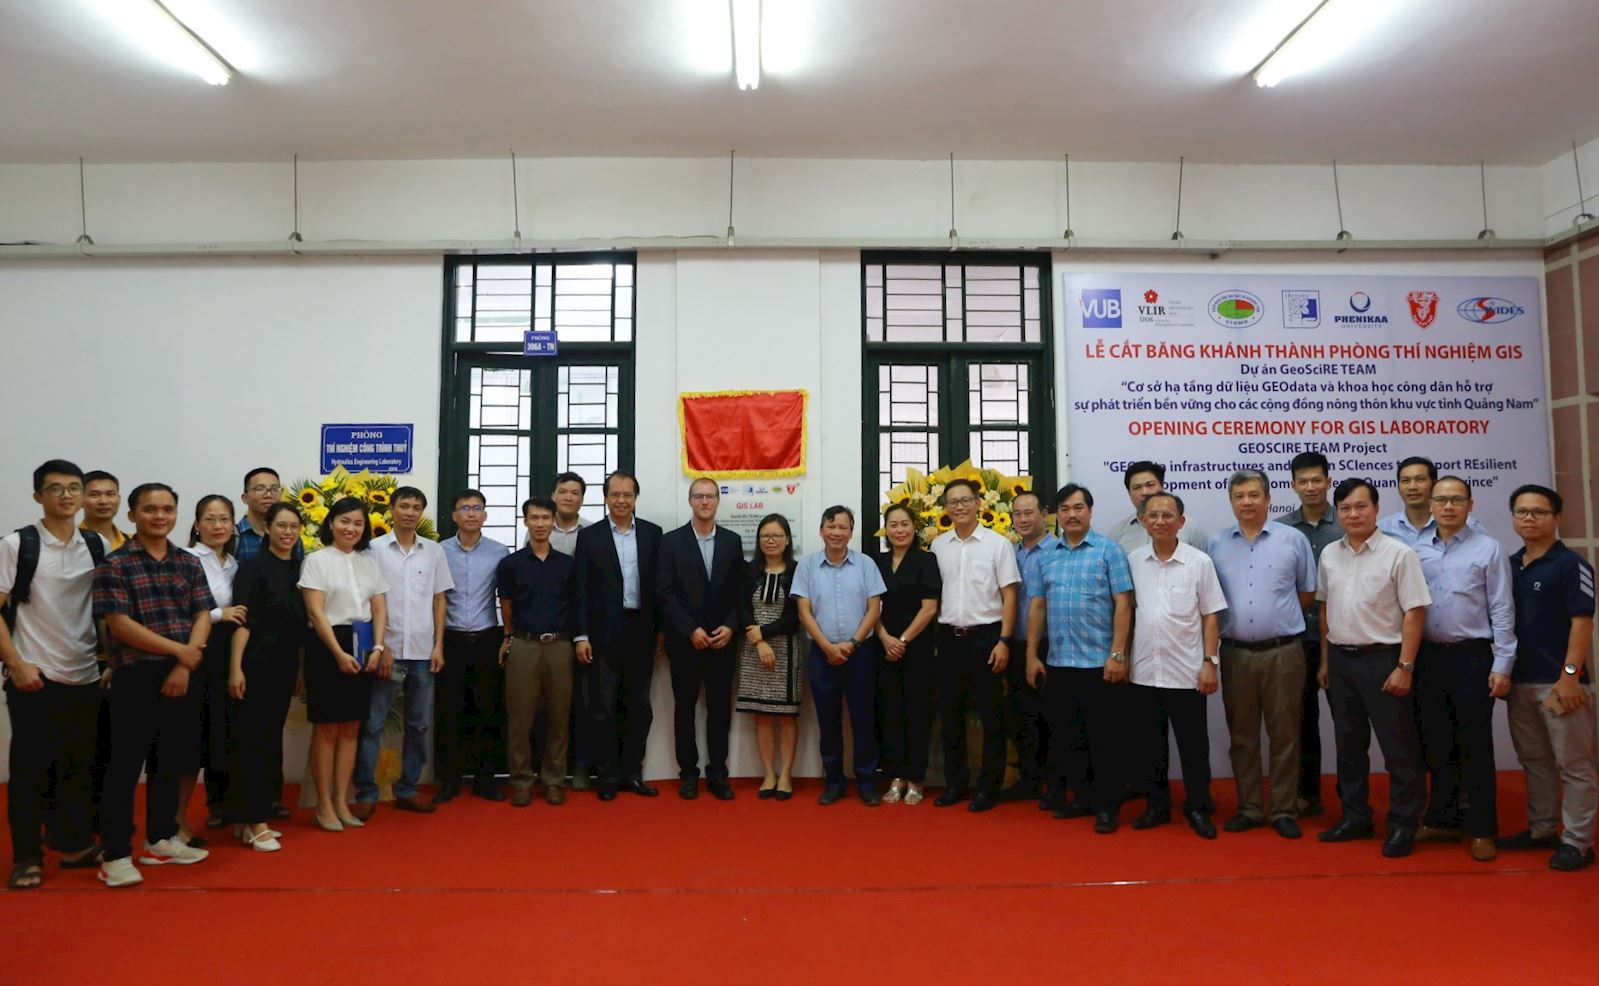 Hội thảo giới thiệu dự án GEOSCIRE “Cơ sở hạ tầng dữ liệu GEOdata và khoa học công dân hỗ trợ sự phát triển bền vững cho các cộng đồng nông thôn khu vực tỉnh Quảng Nam”